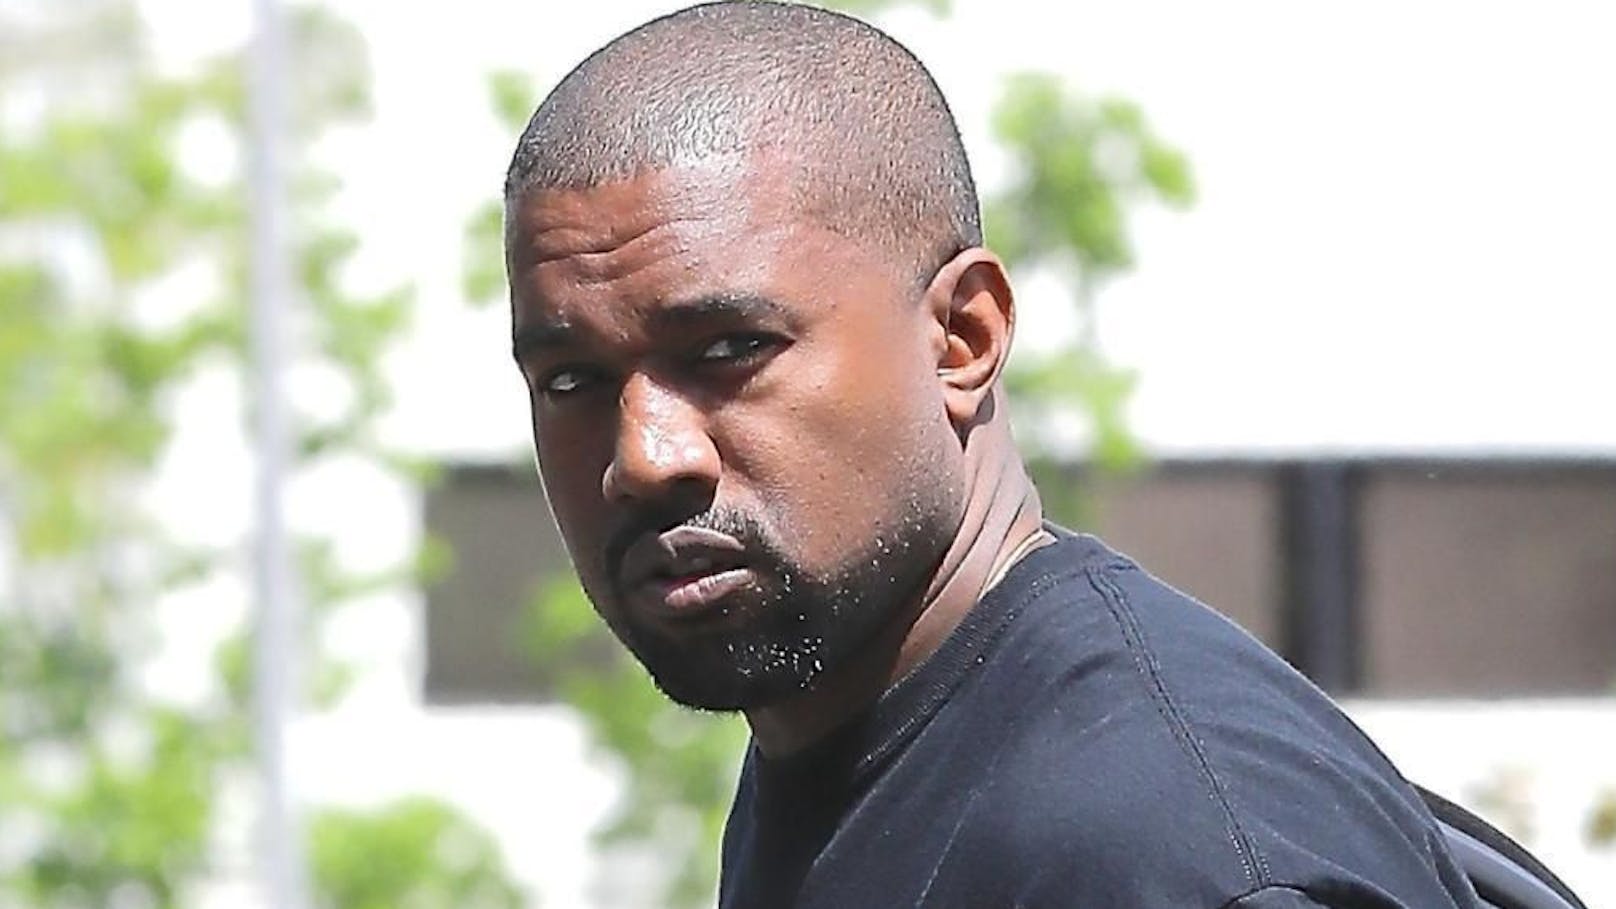 Geschwür an der Lippe? Fans sorgen sich um Kanye West